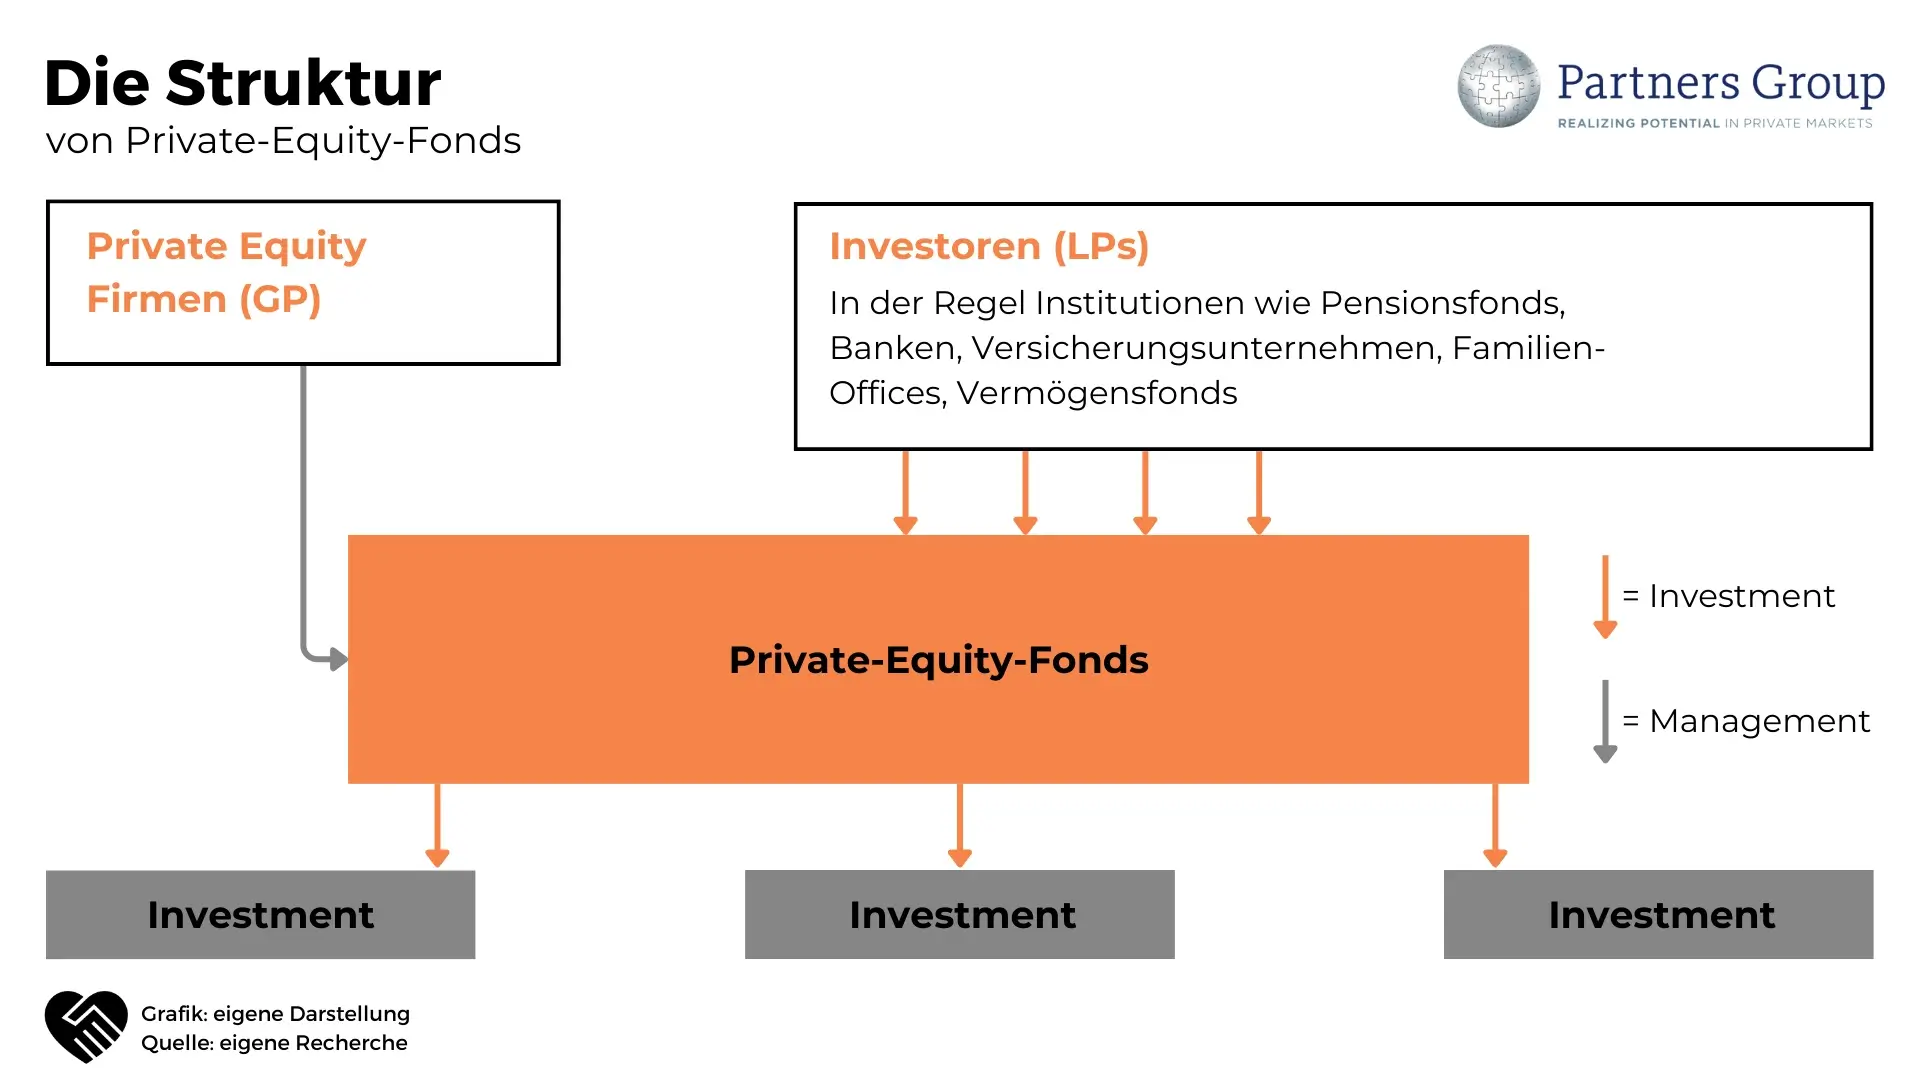 Partners Group Aktie Analyse - Alternative Investments aus der Schweiz